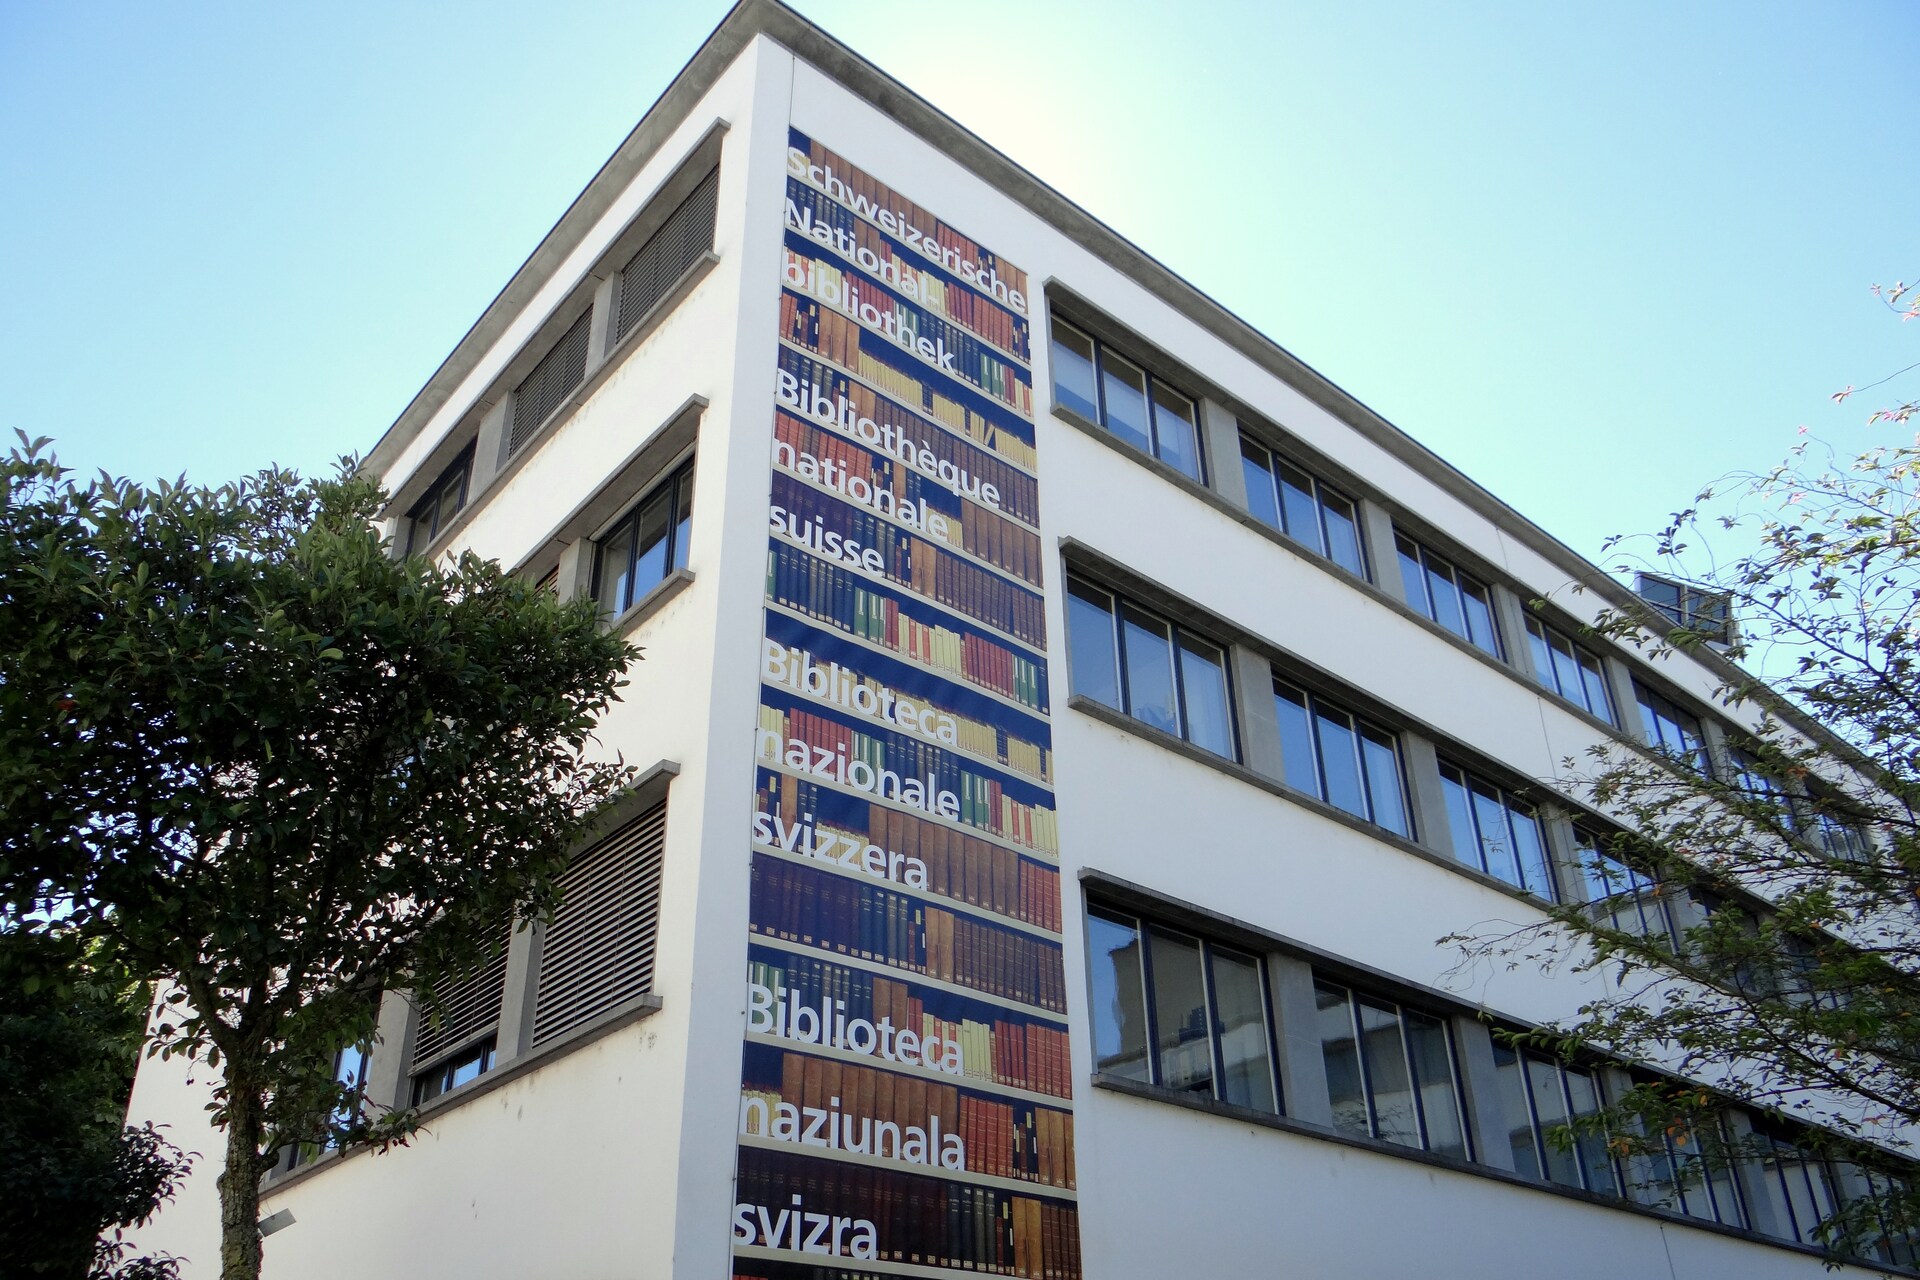 Schweizisk nationalbibliotek: NL indsamler Helvetica, dvs. tekster, billeder og lyddokumenter vedrørende Schweiz, og bevarer dermed den kollektive hukommelse om landet i Bern